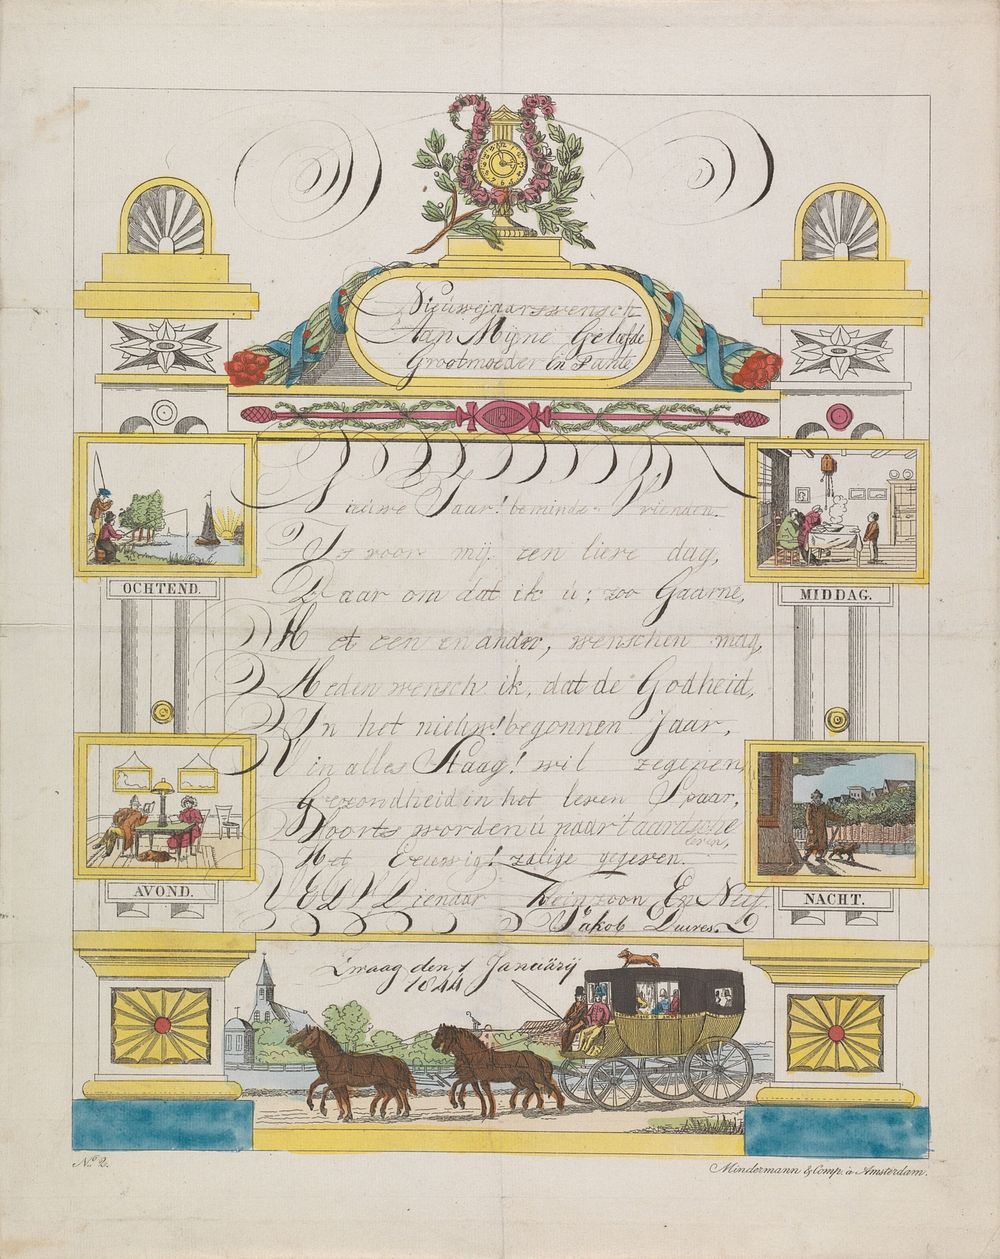 Wensbrief met de vier tijden van de dag en een postkoets (1844) by Mindermann and Co and anonymous